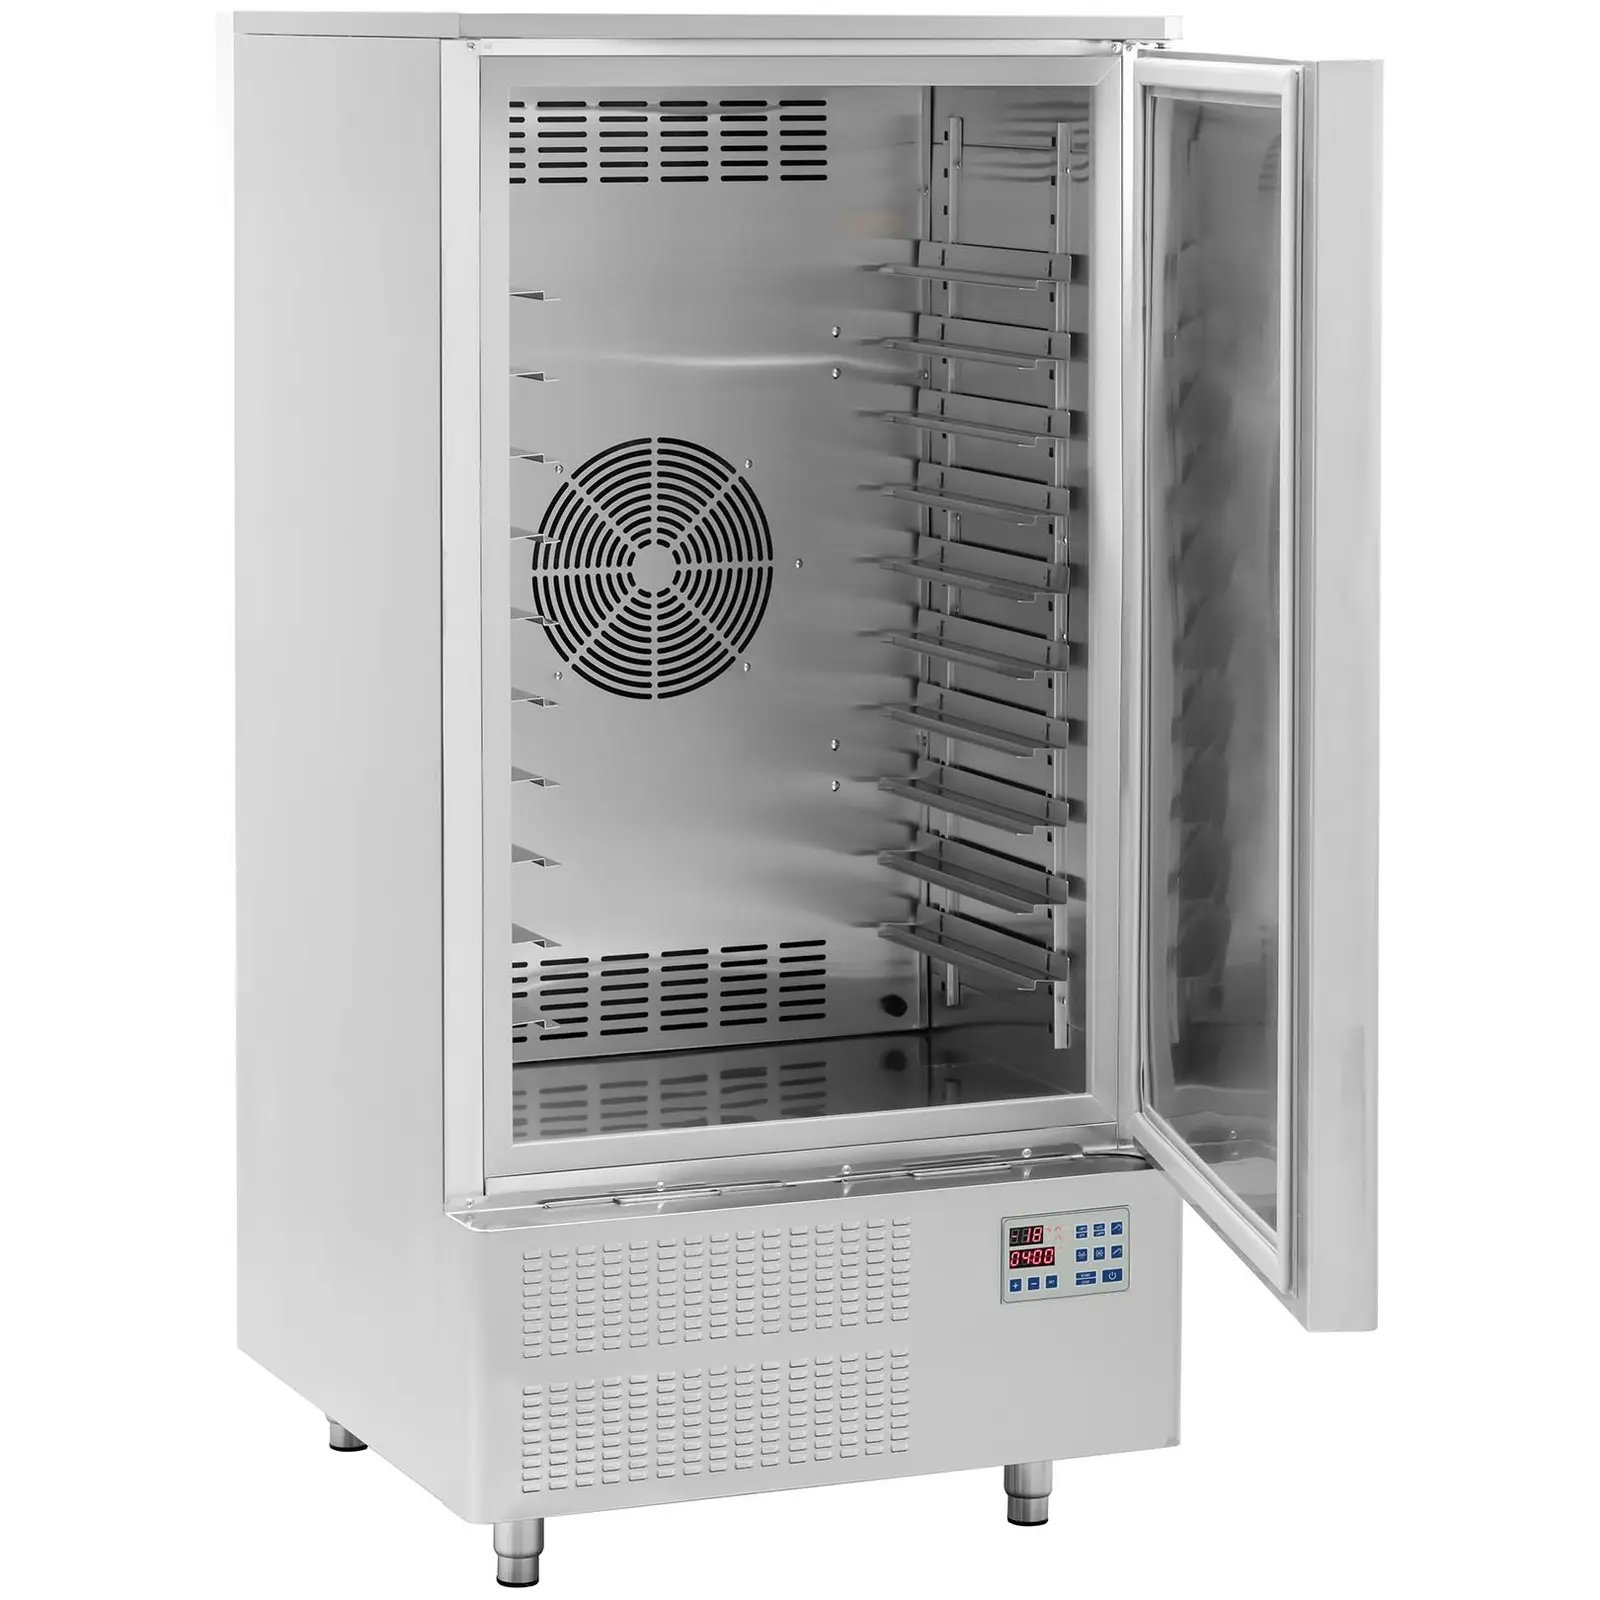 Шоков охладител - 276 л - Royal Catering - функция за охлаждане и замразяване - неръждаема стомана